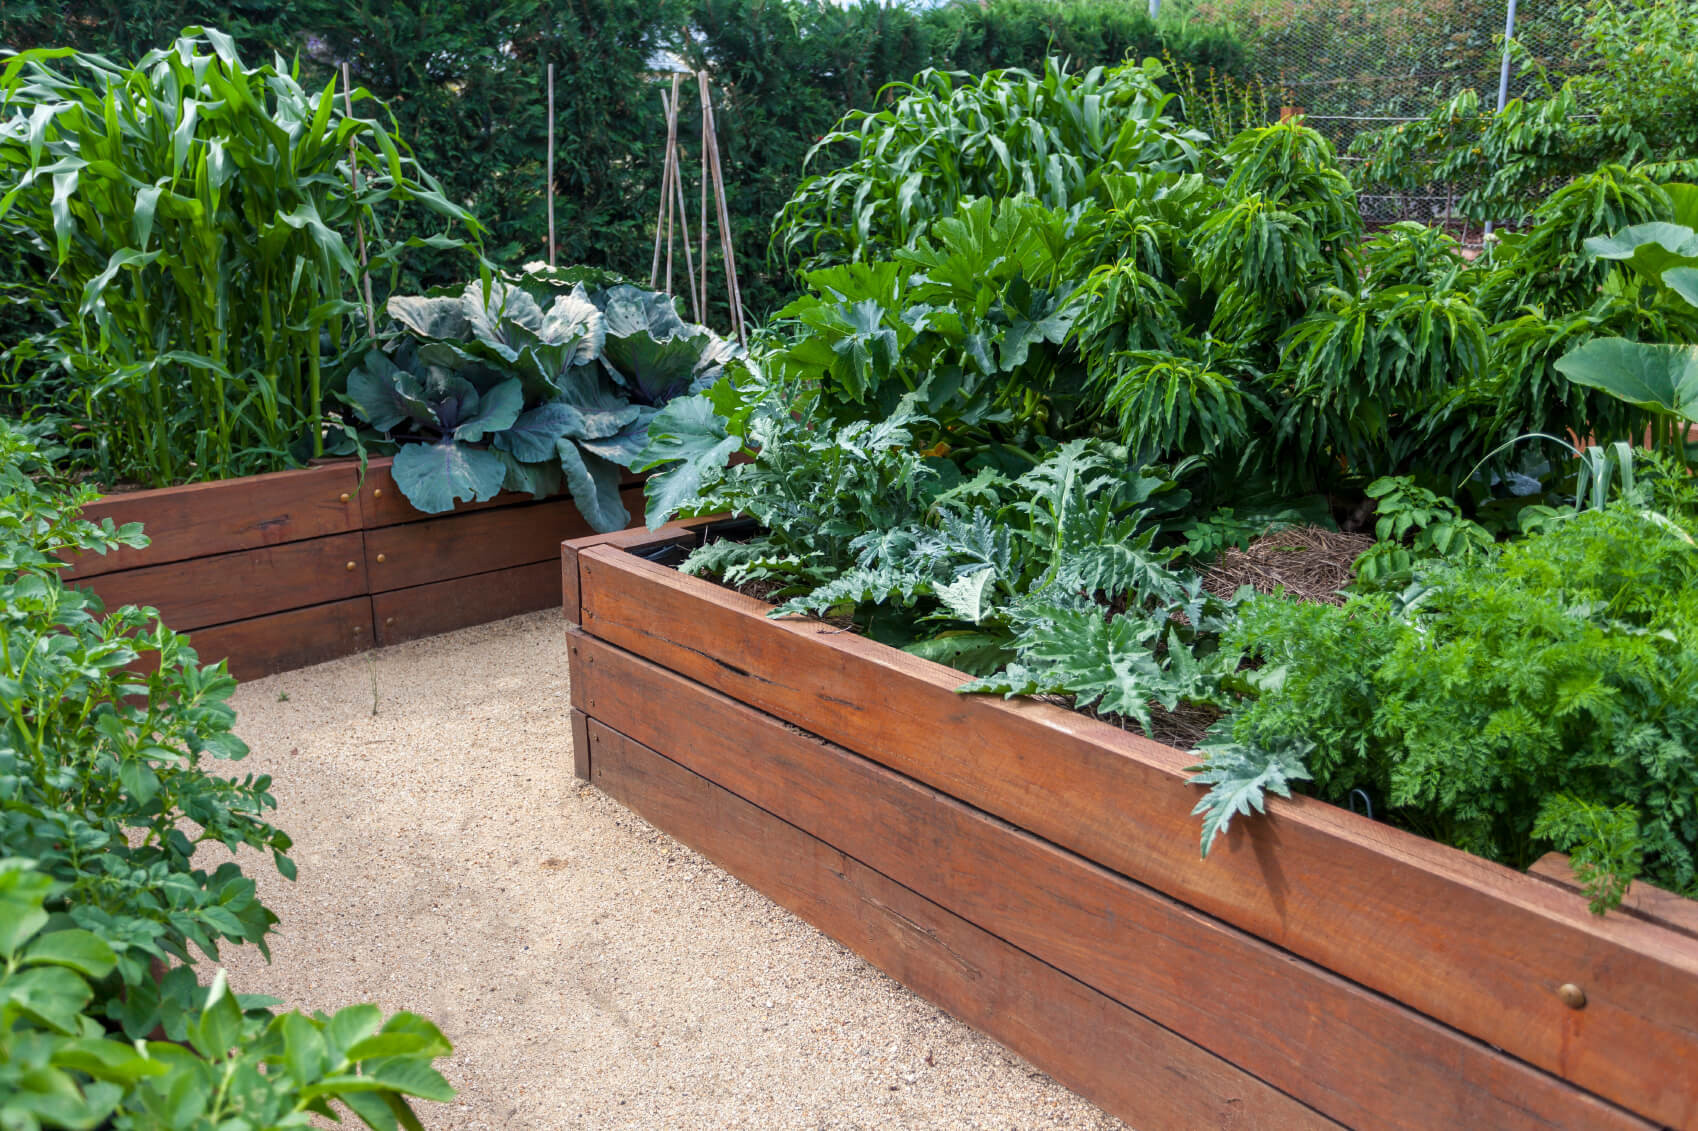 Best ideas about Raised Bed Garden Ideas
. Save or Pin 41 Backyard Raised Bed Garden Ideas Now.